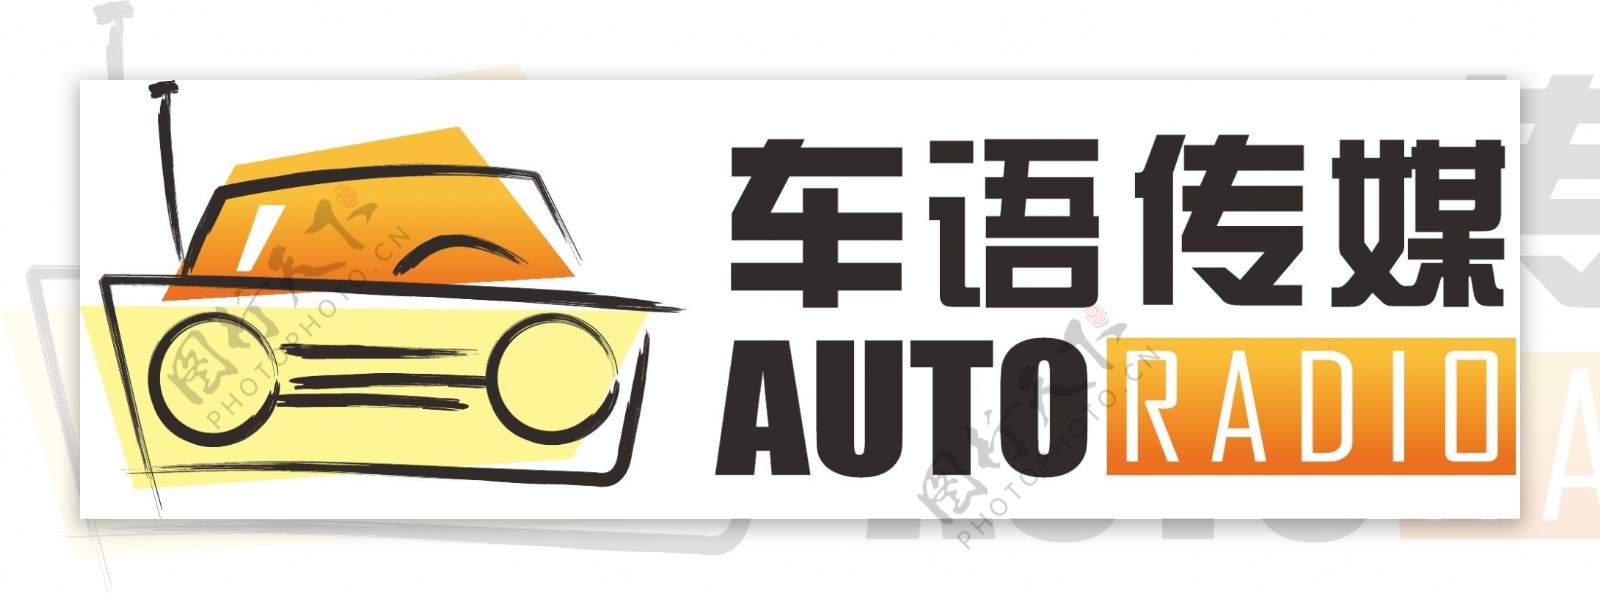 车语传媒logo图片